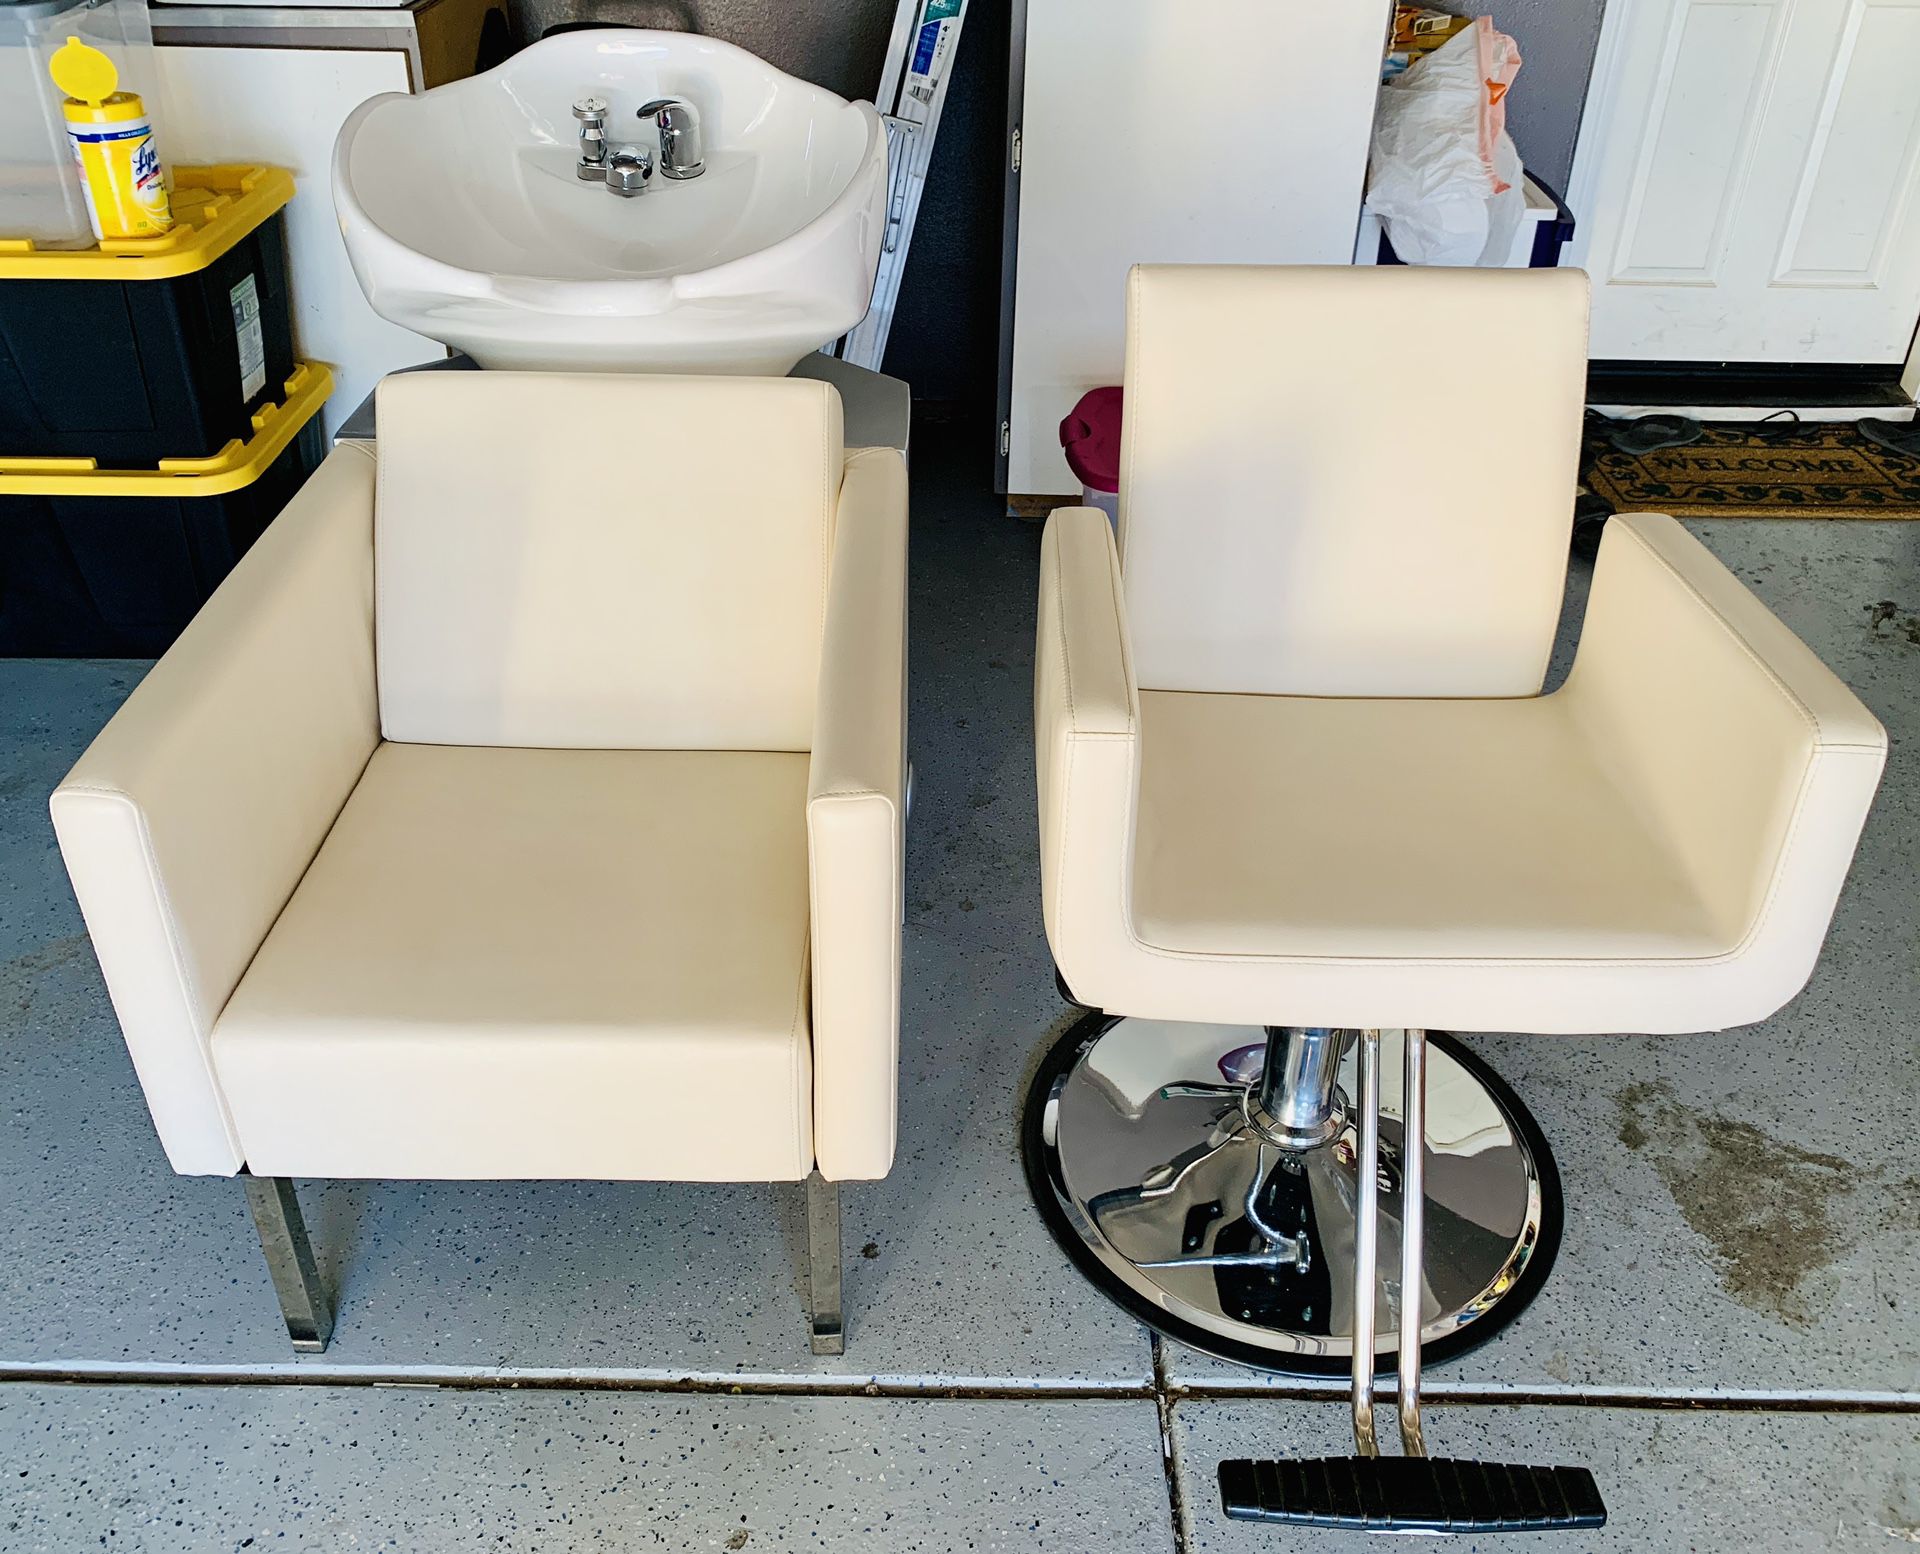 Professional Salon Hydraulic Chair & Shampoo Bowl w/Chair